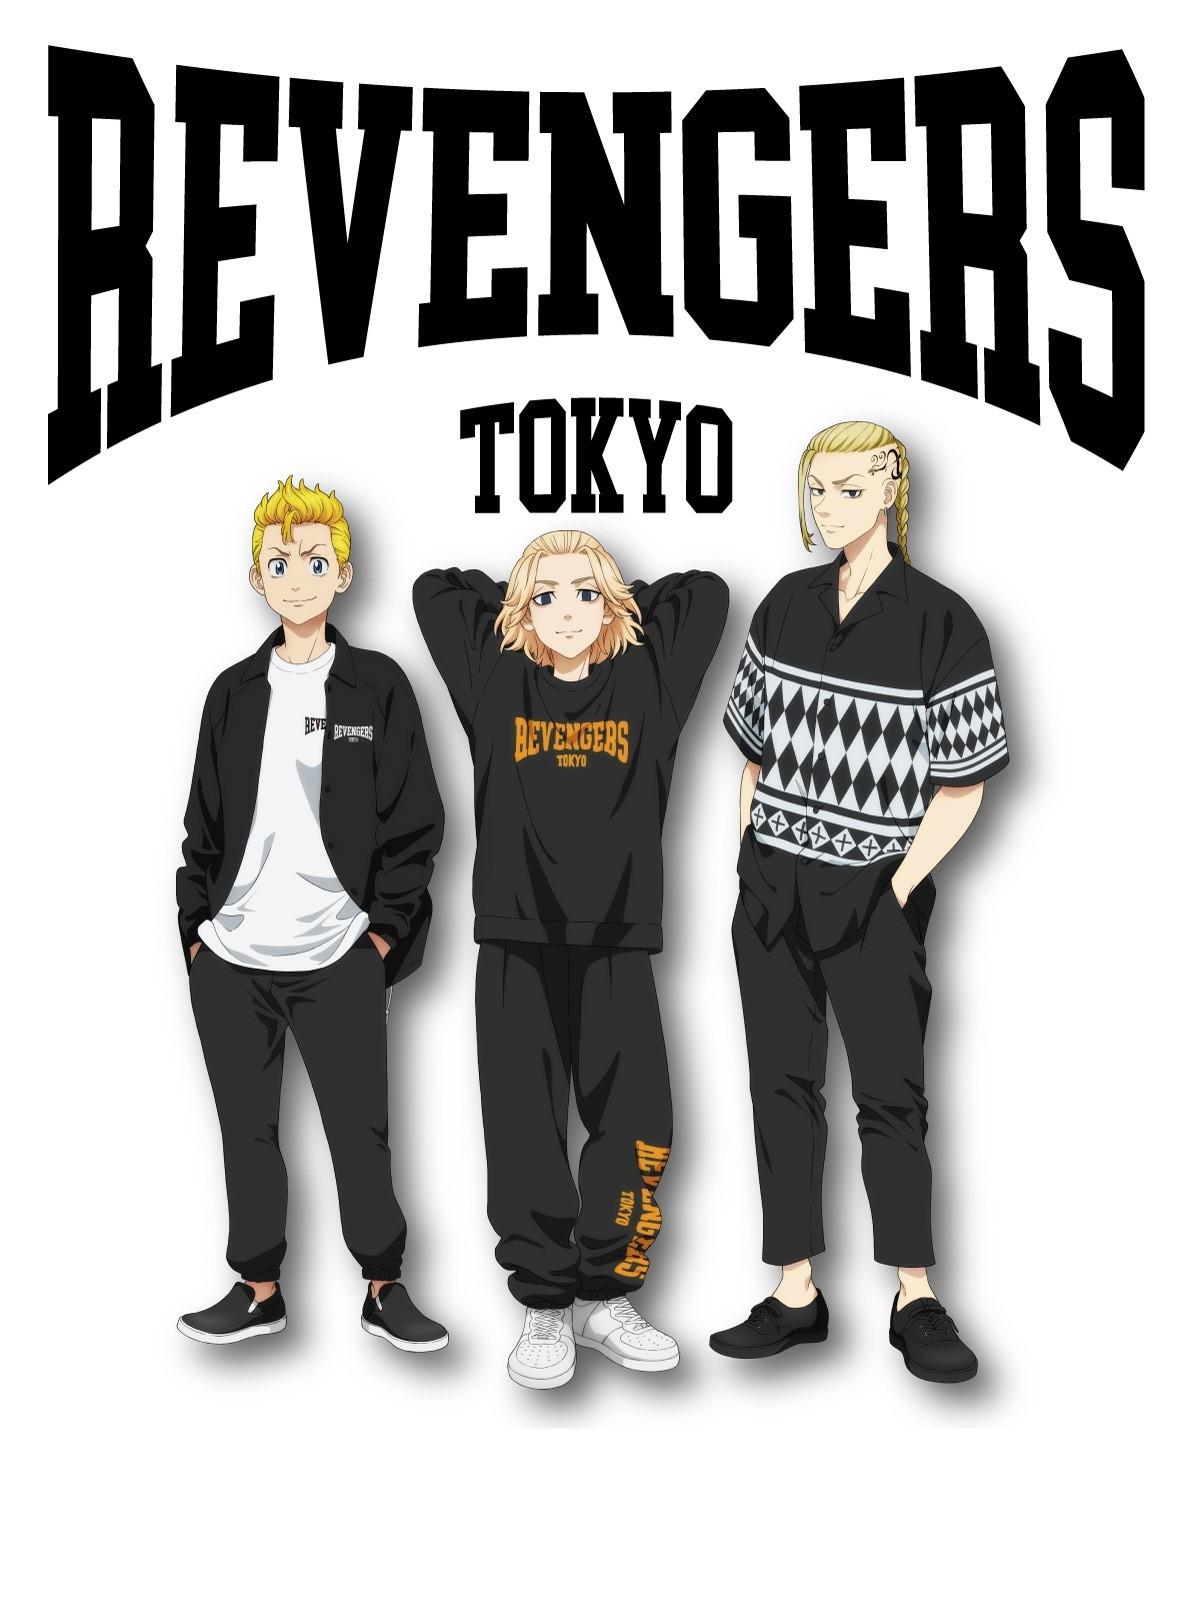 Tokyo Revengers